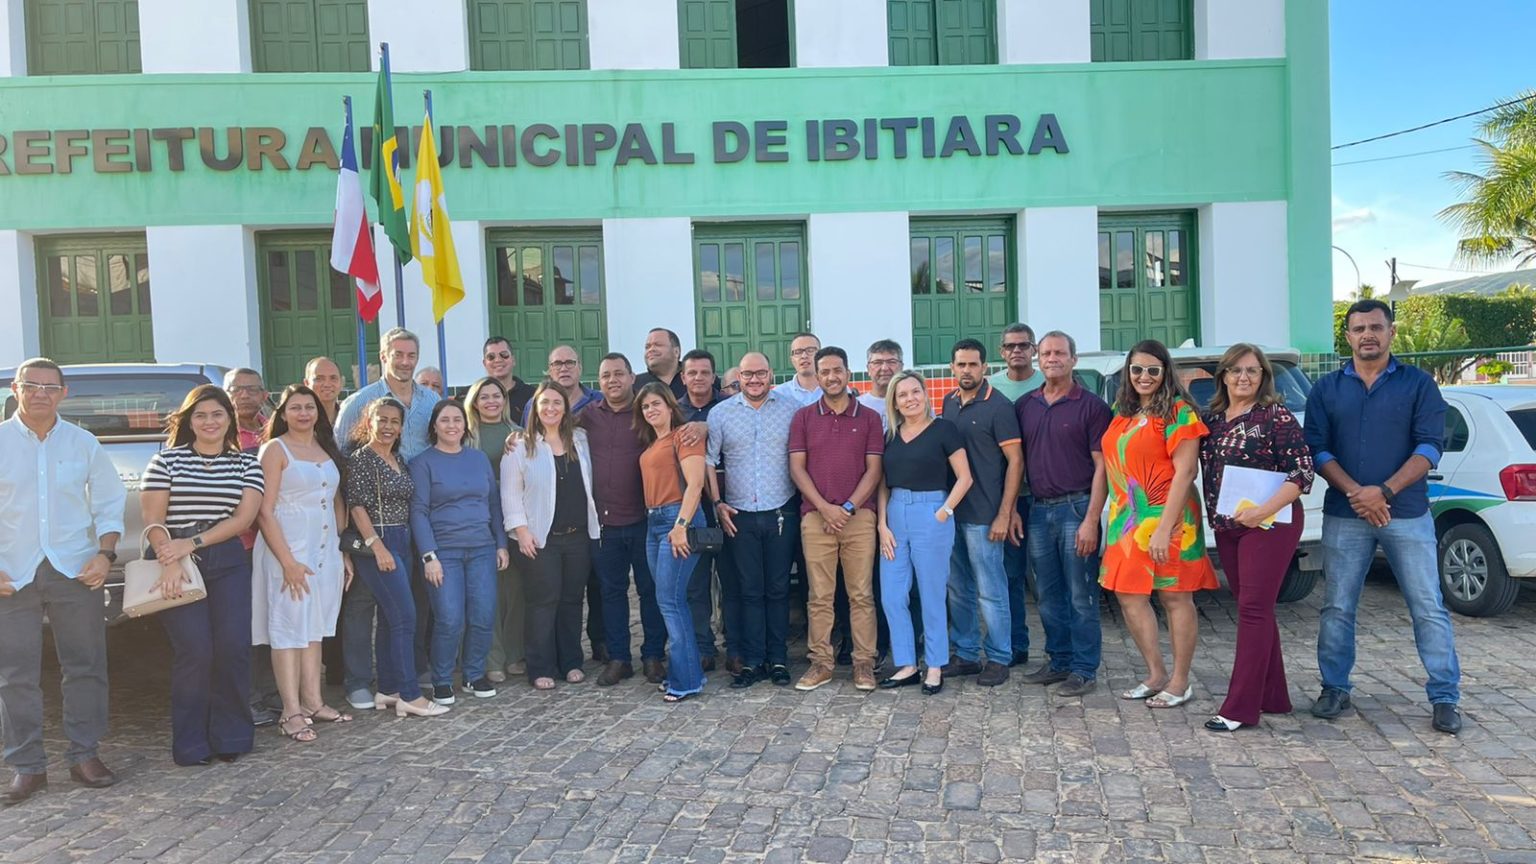 #Chapada: Prefeitura de Ibitiara firma parceria com poder de revolucionar economia local através da produção de energia eólica